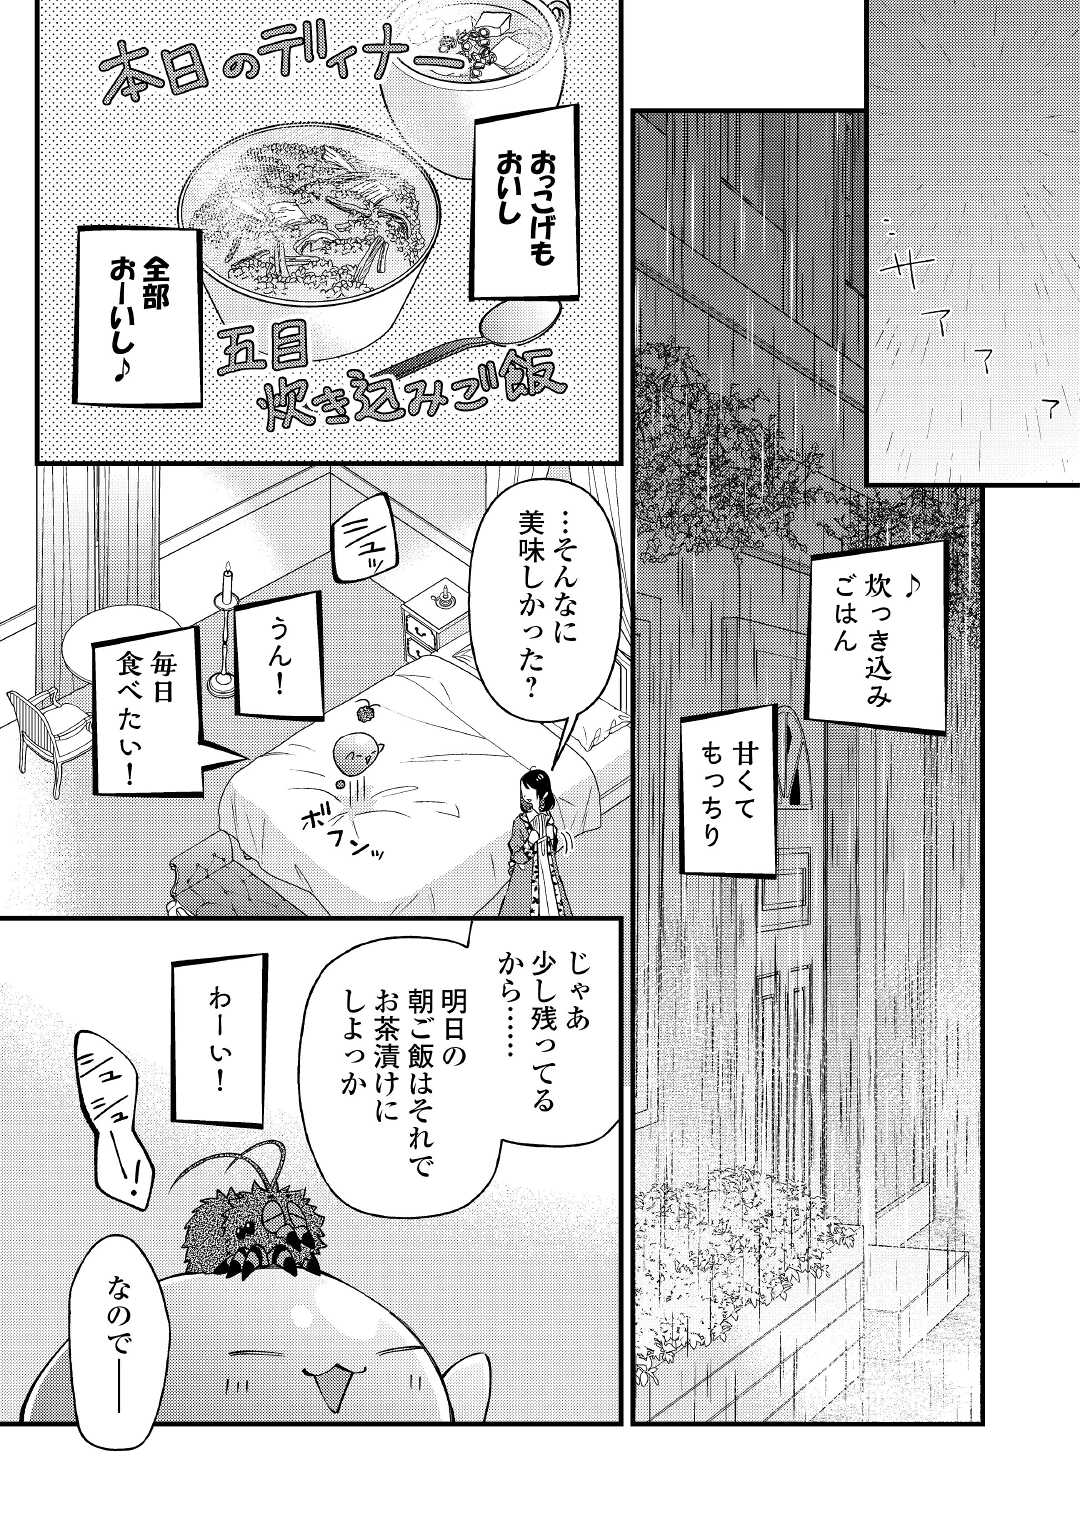 Tenisaki wa Kusushi ga Sukunai Sekai Deshita - Chapter 19.1 - Page 3